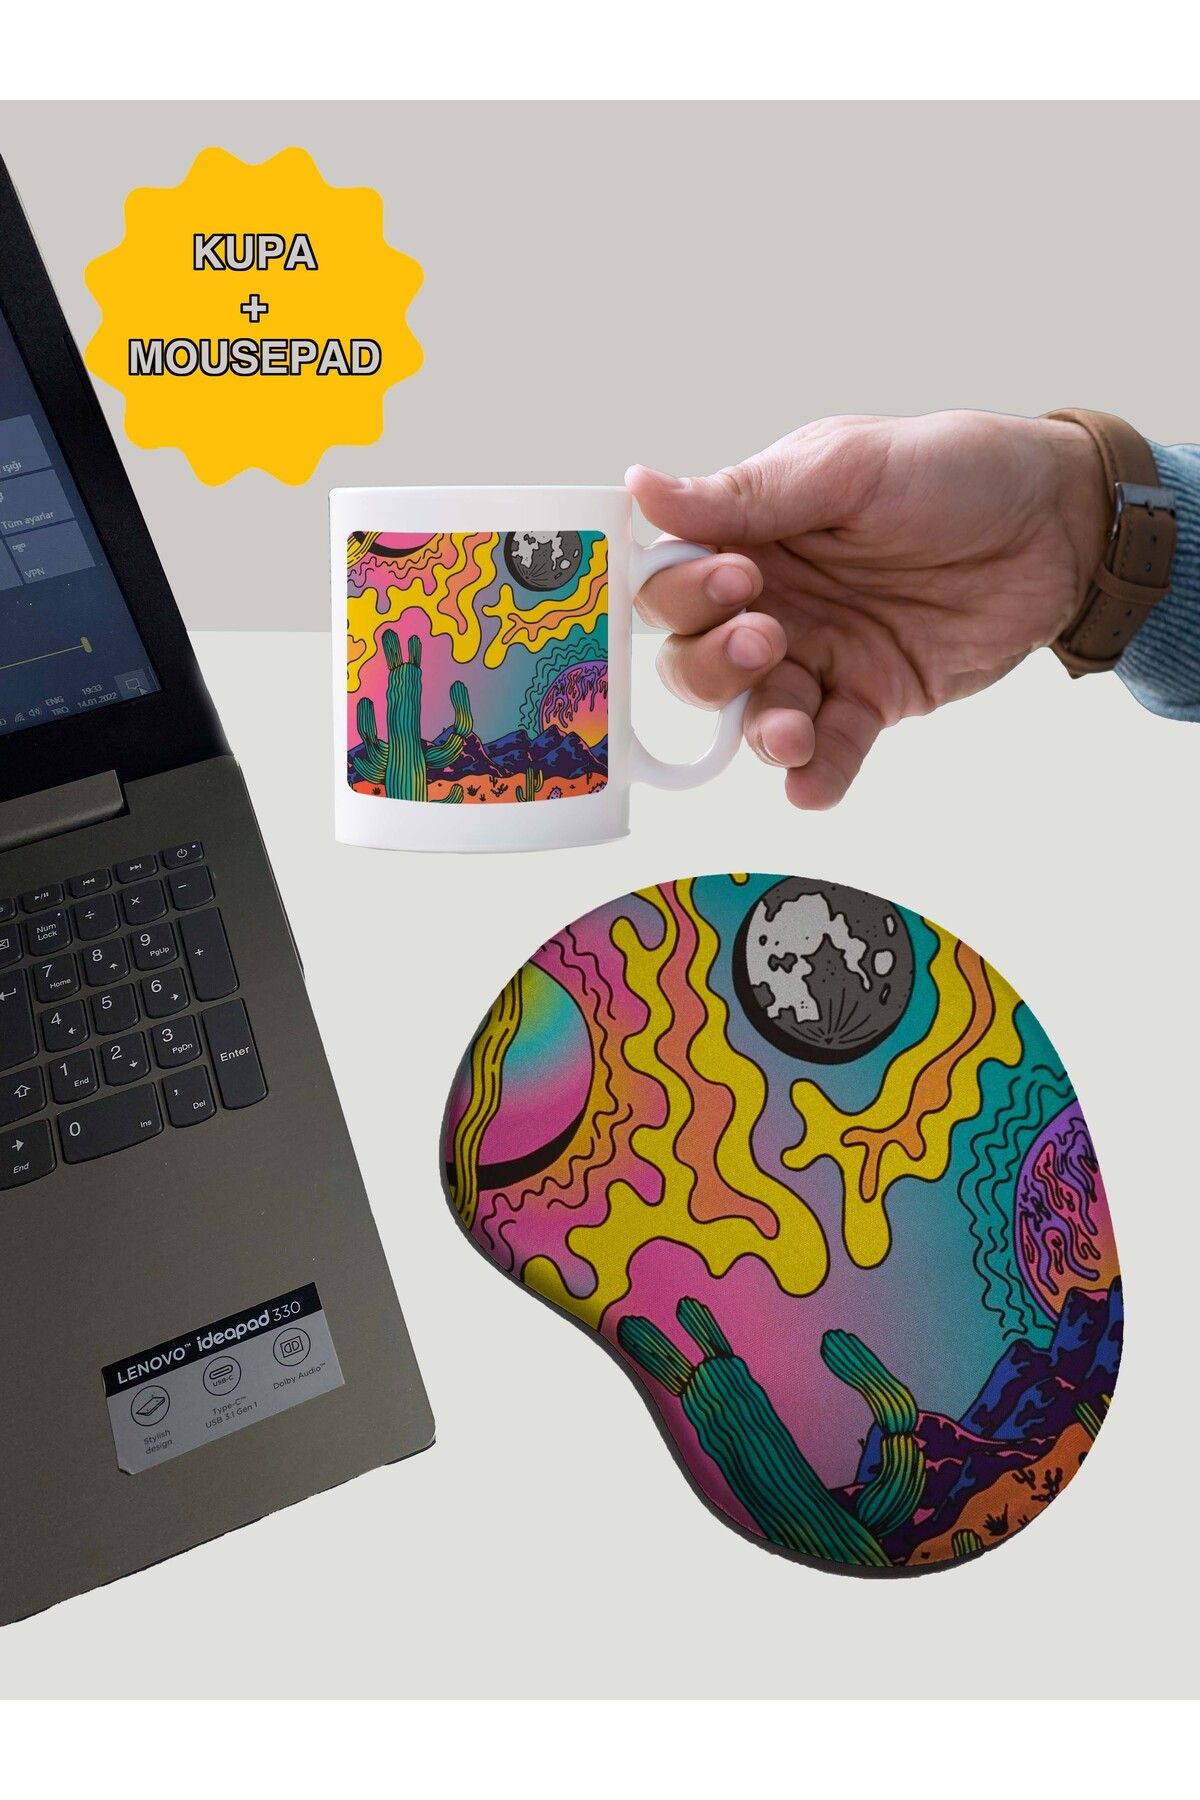 rakkun shop Ütopya Desenli Baskılı Bilek Destekli Mouse Pad + Kupa Bardak Mug